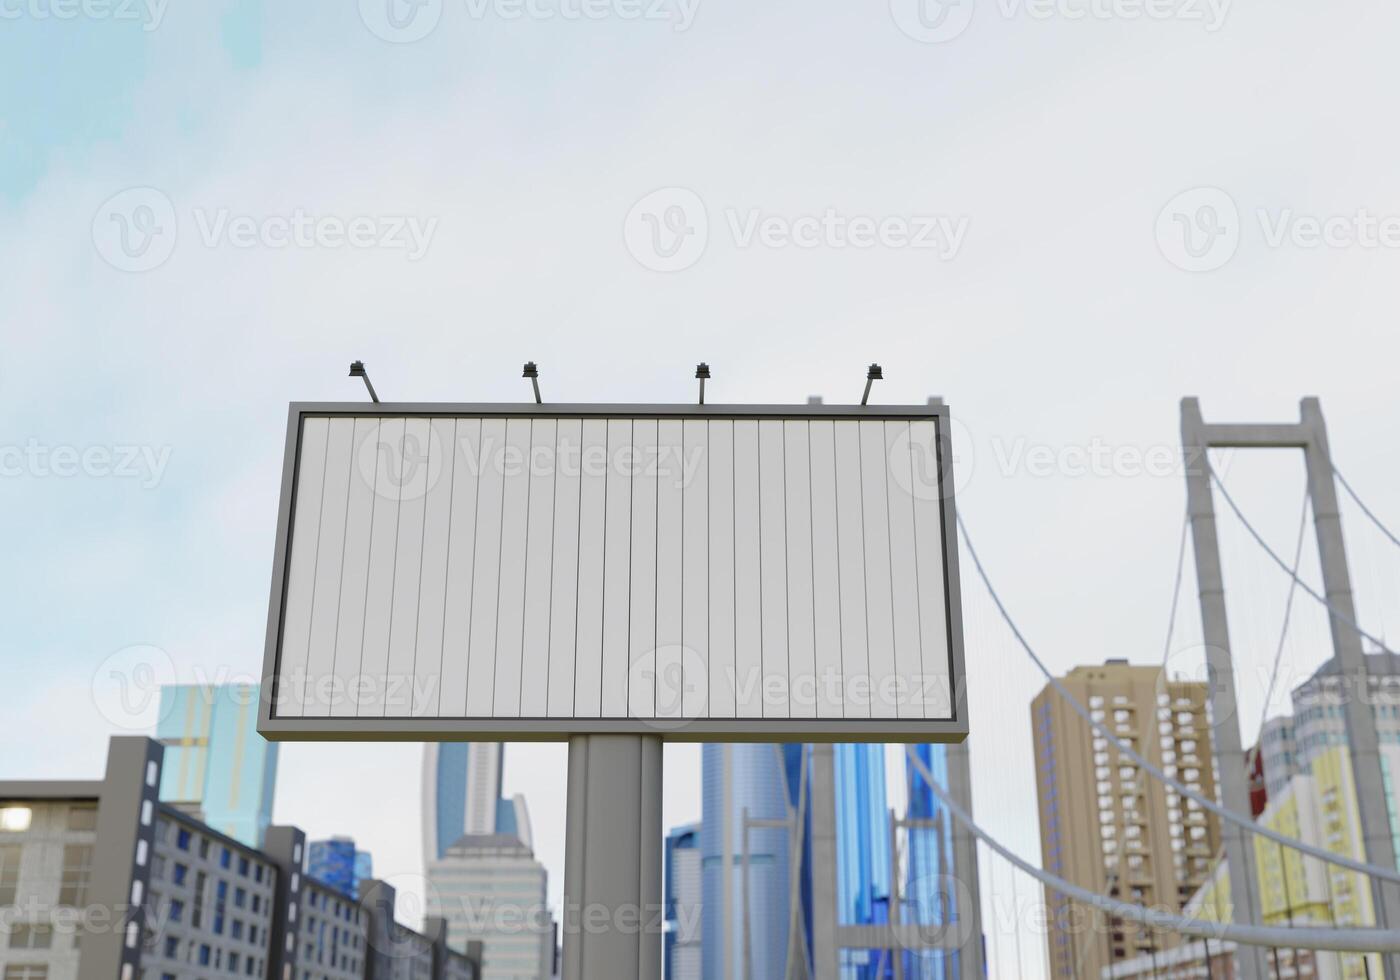 3D-Modell leere Flip-Plakatwand in der Innenstadt foto